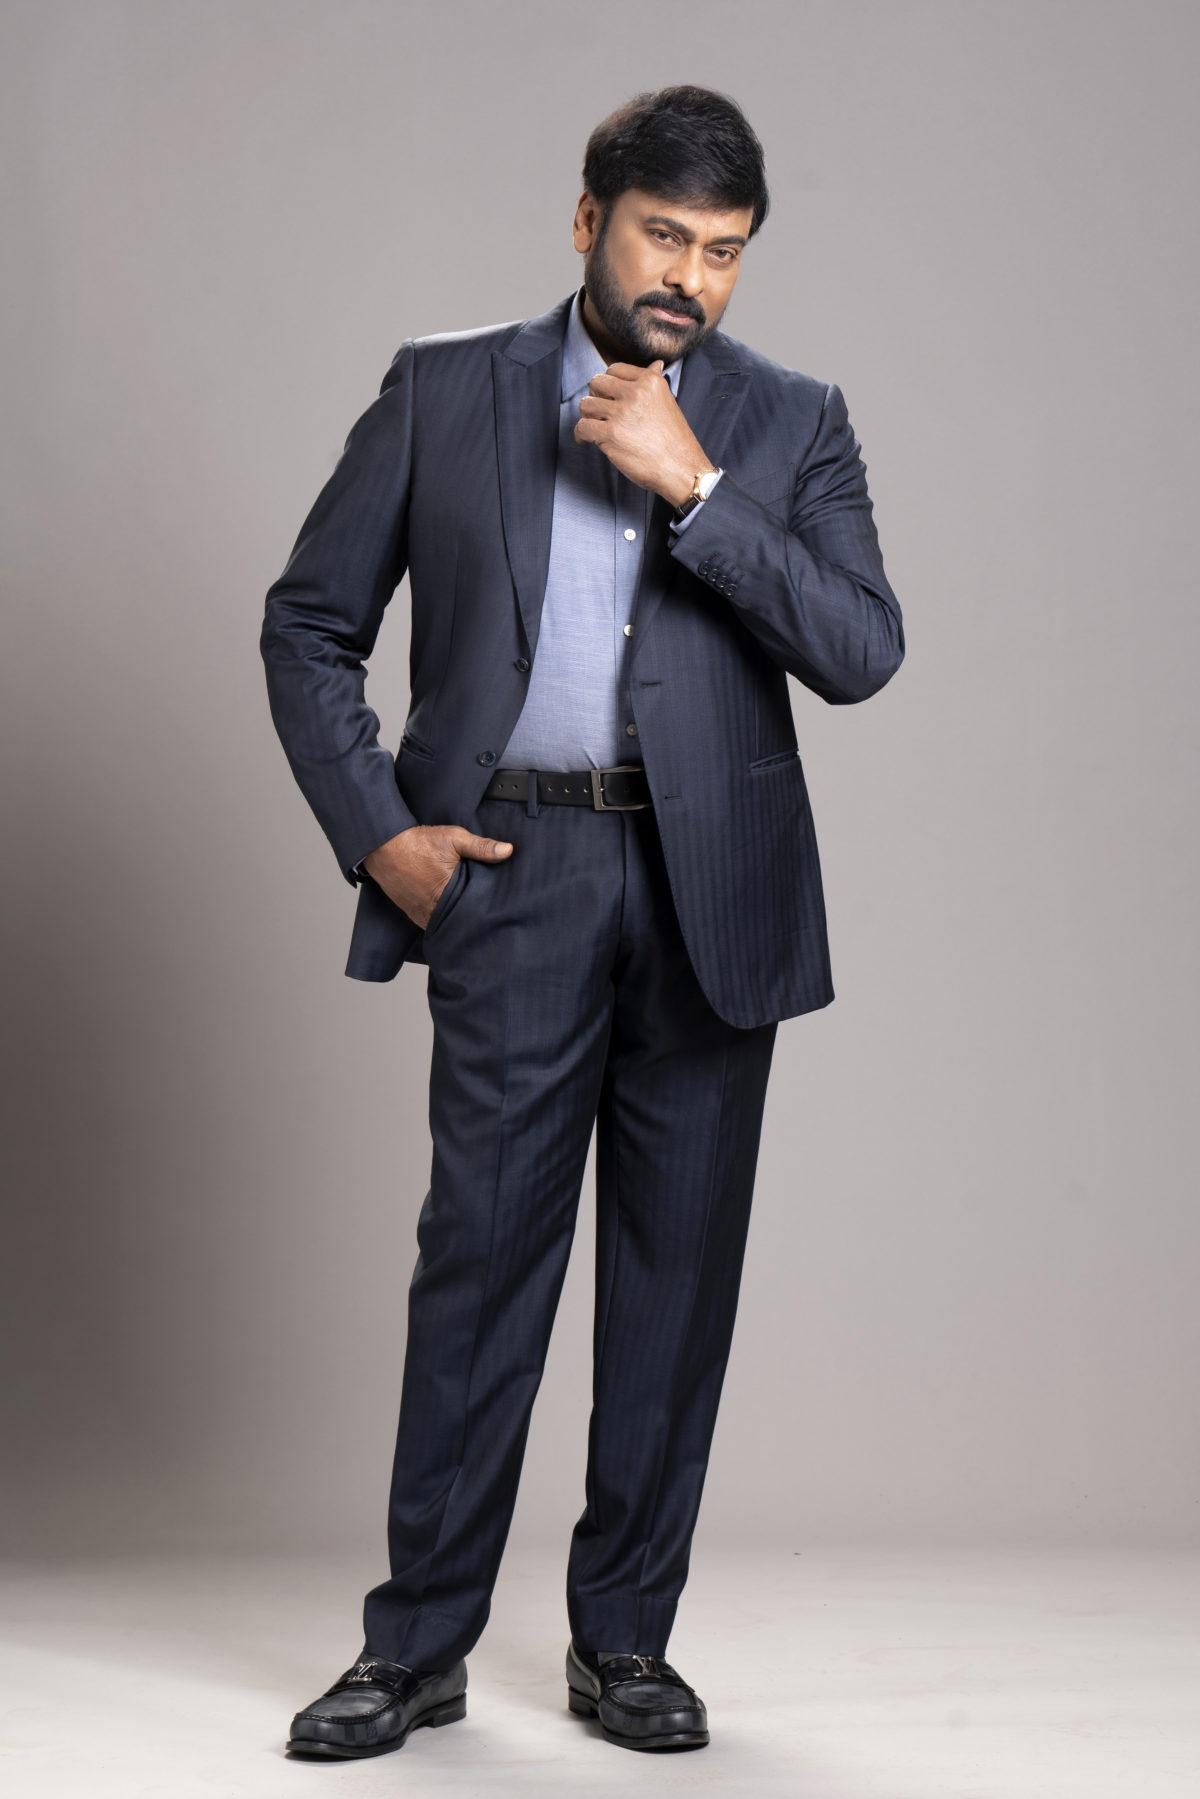 Pic Talk: Chiranjeevi Looks Dapper In Suit